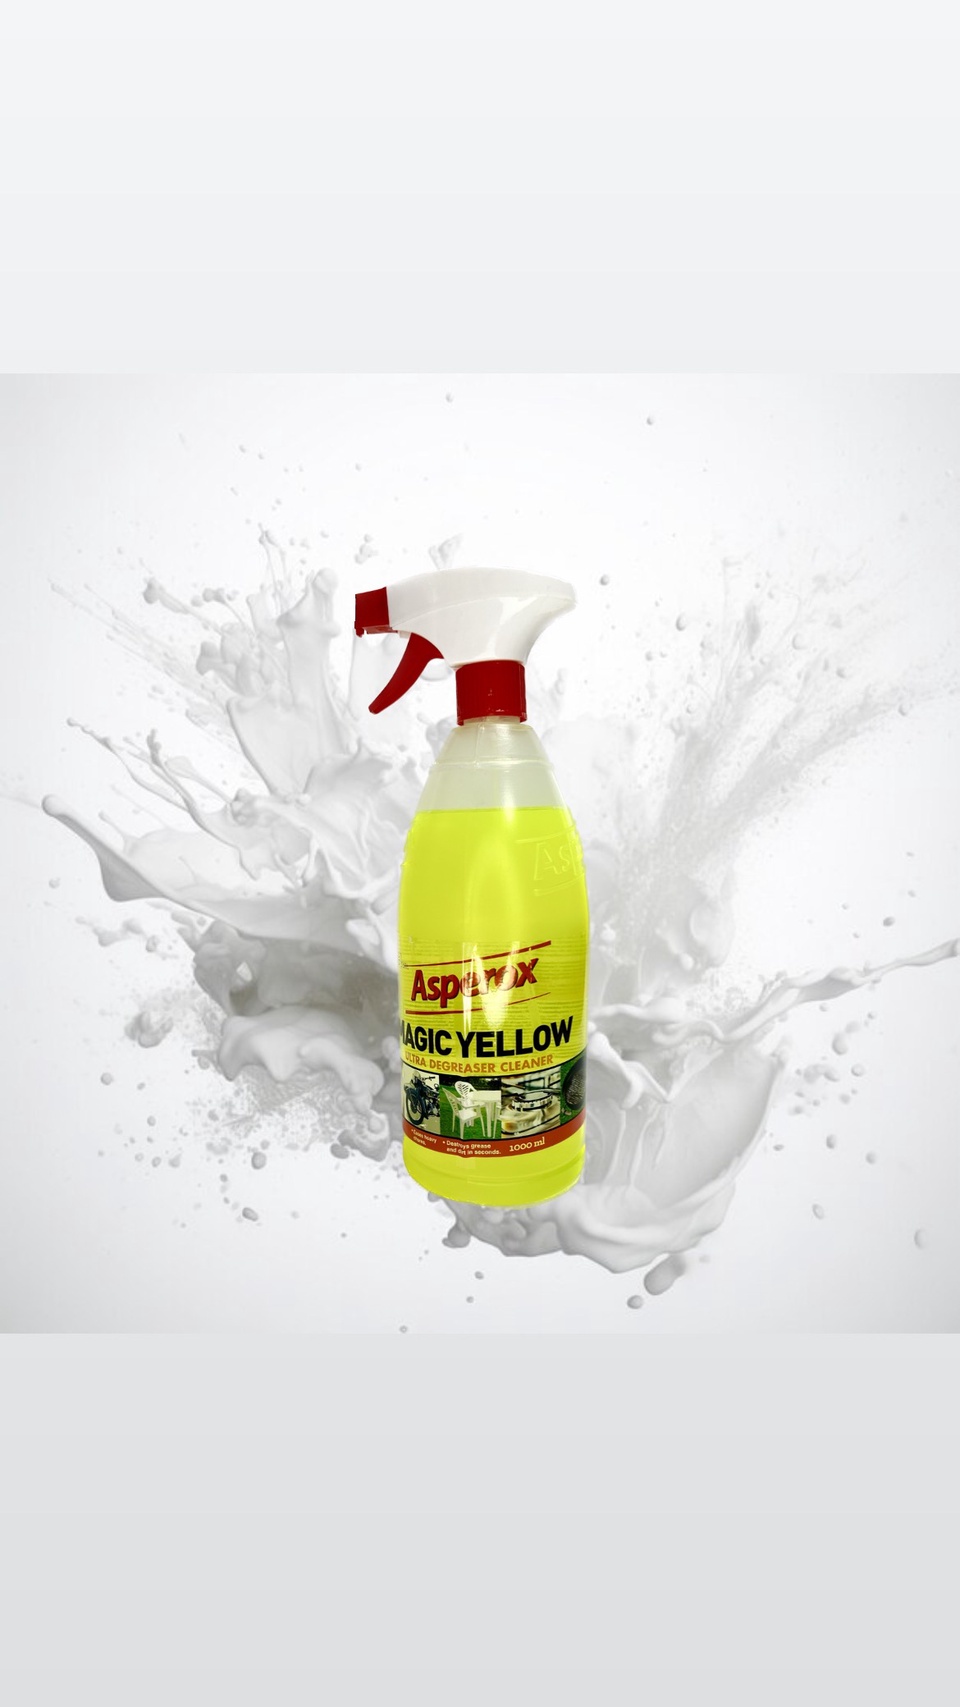 Универсальное чистящее ср-во Asperox “Magic Yellow” - 350 ₽, заказать онлайн.